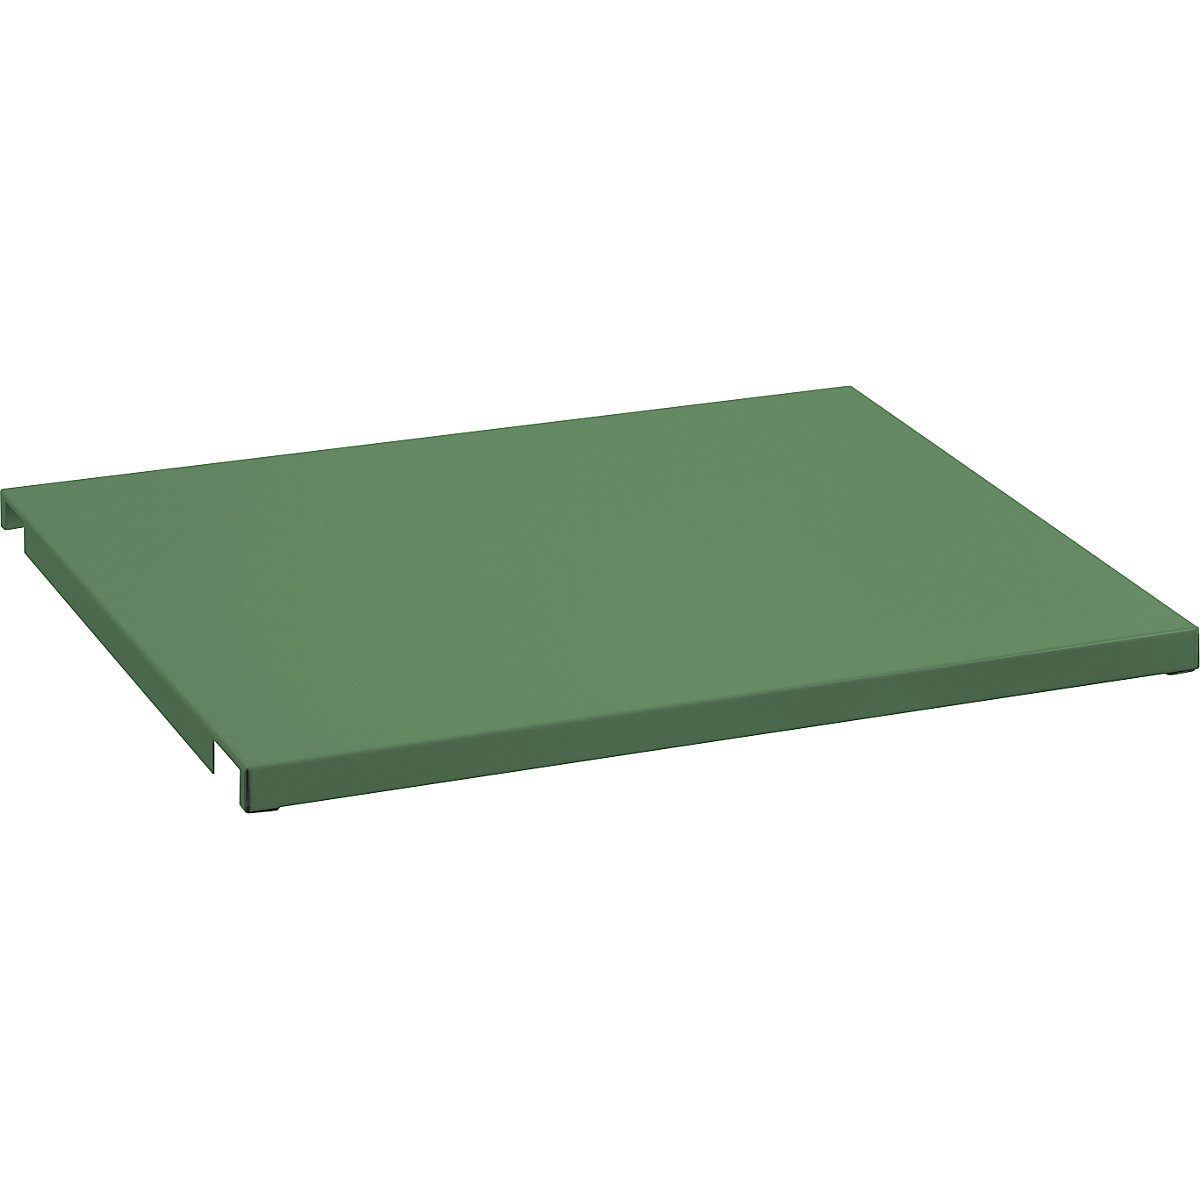 Recouvrement en tôle pour cadre de tablette – LISTA, pour l x p 890 x 860 mm, vert réséda-2